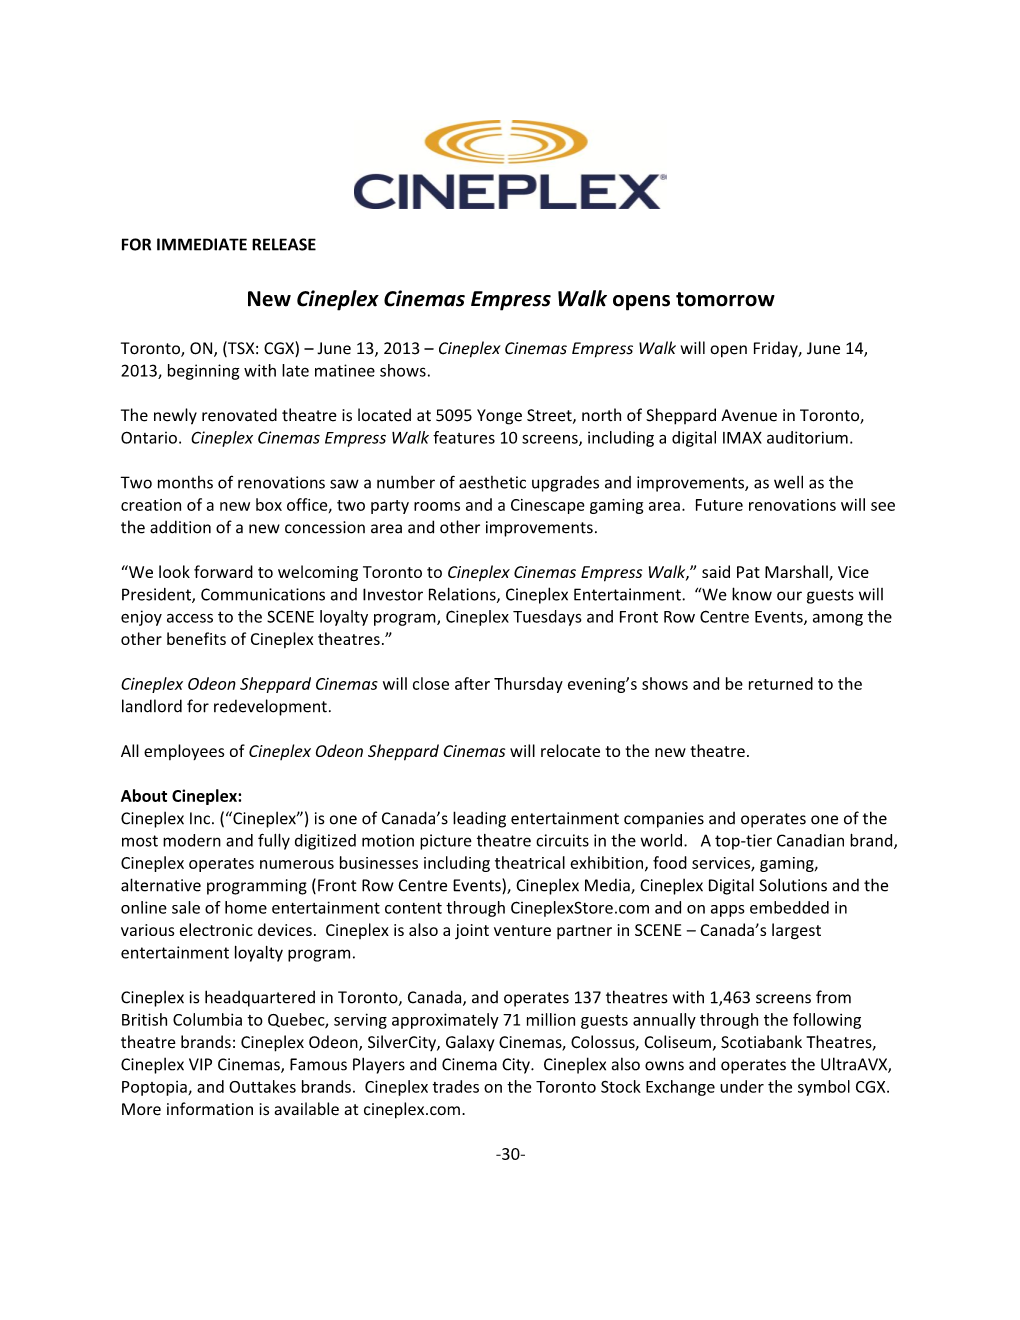 New Cineplex Cinemas Empress Walk Opens Tomorrow